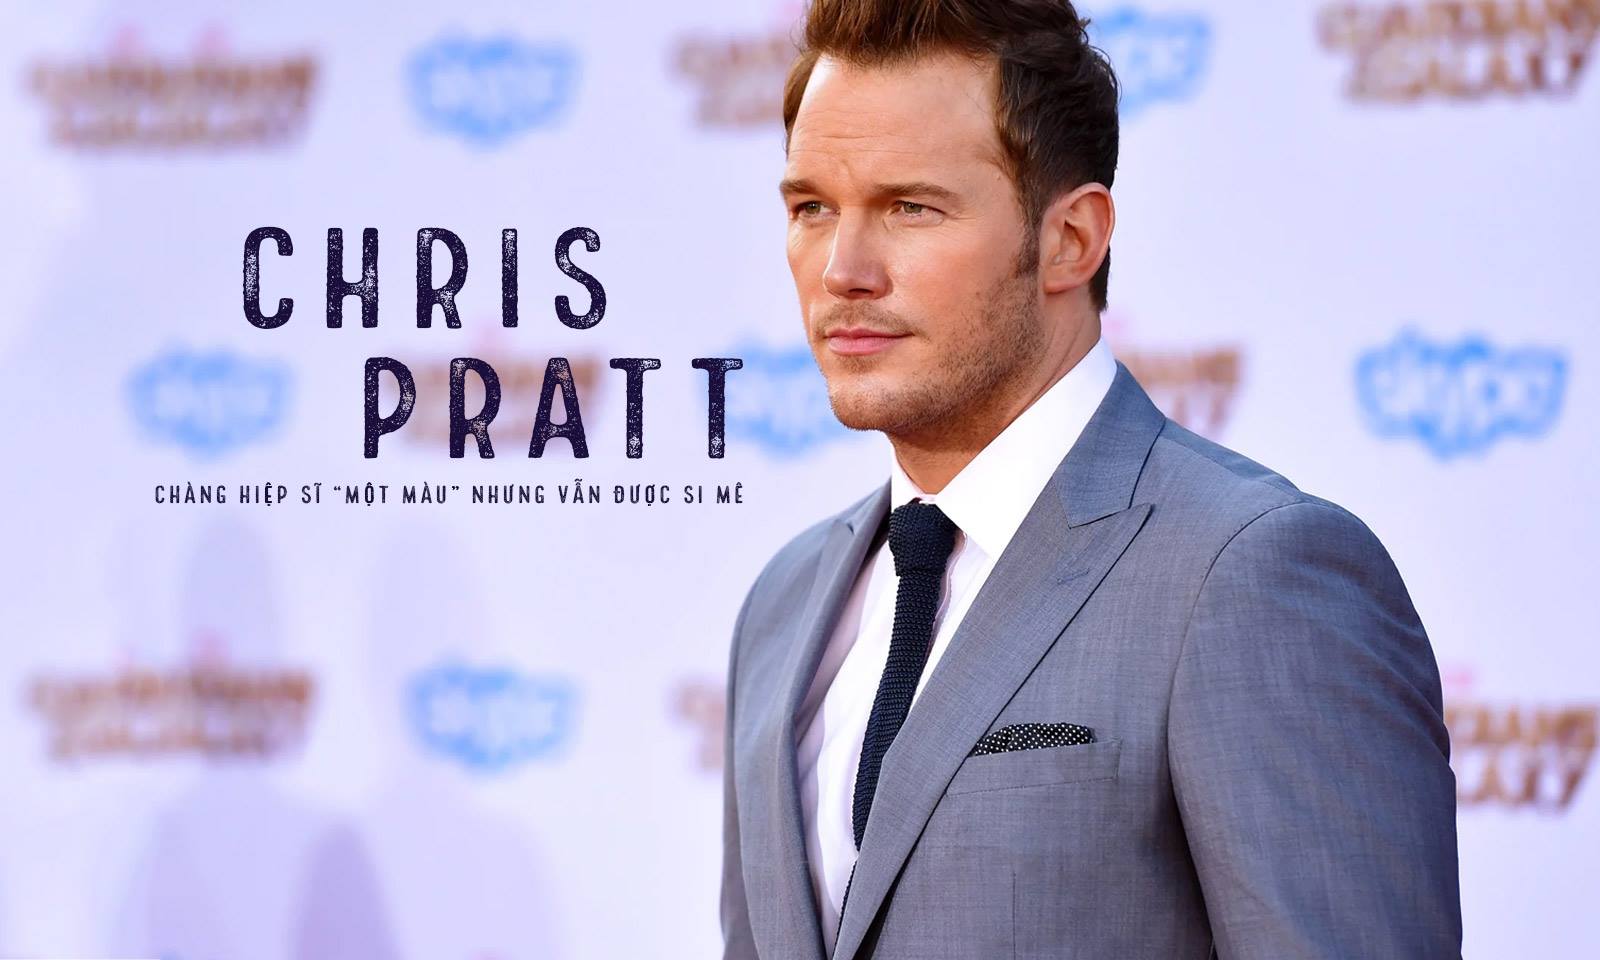 Chris Pratt – Chàng hiệp sĩ “một màu” nhưng vẫn được si mê